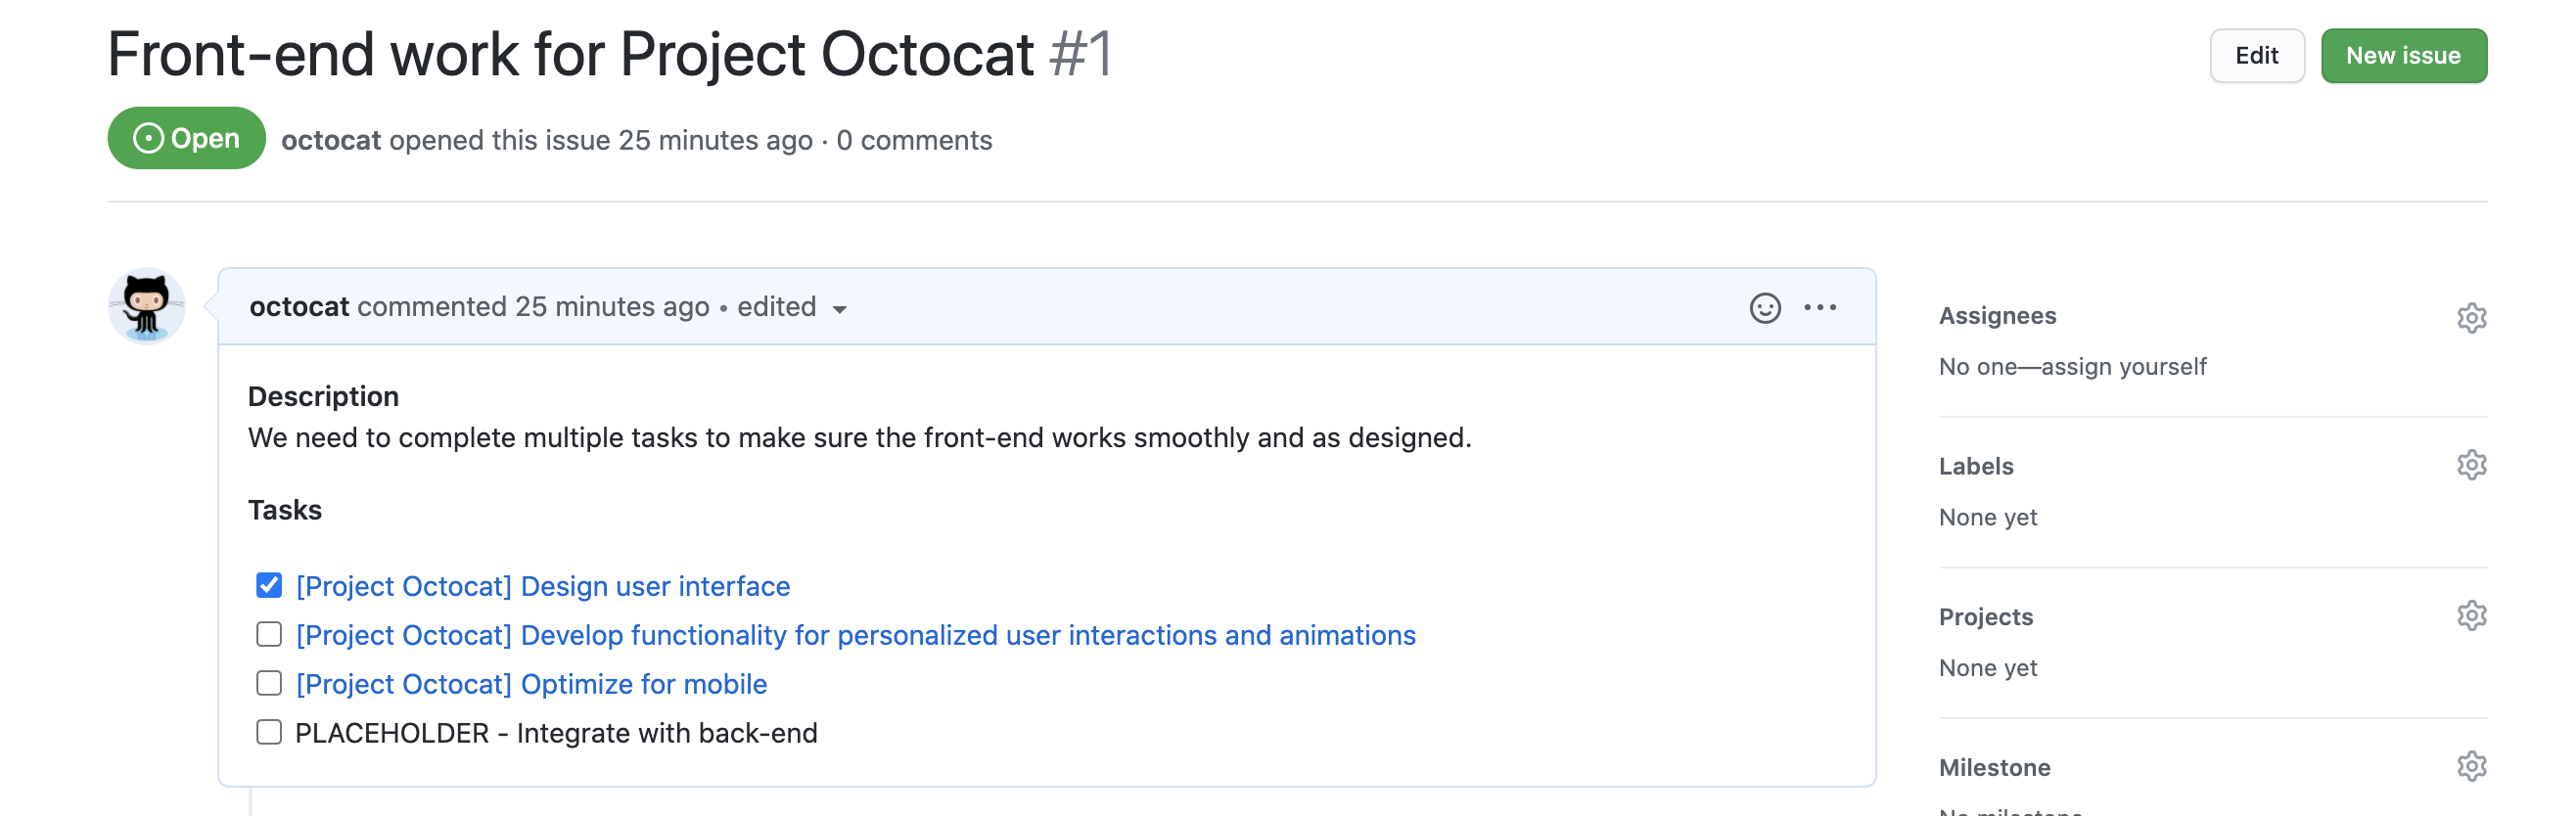 Captura de tela de um problema chamado "Trabalho de front-end do Projeto Octocat". O corpo do problema contém uma lista de tarefas, com uma caixa de seleção antes de cada link de problema.